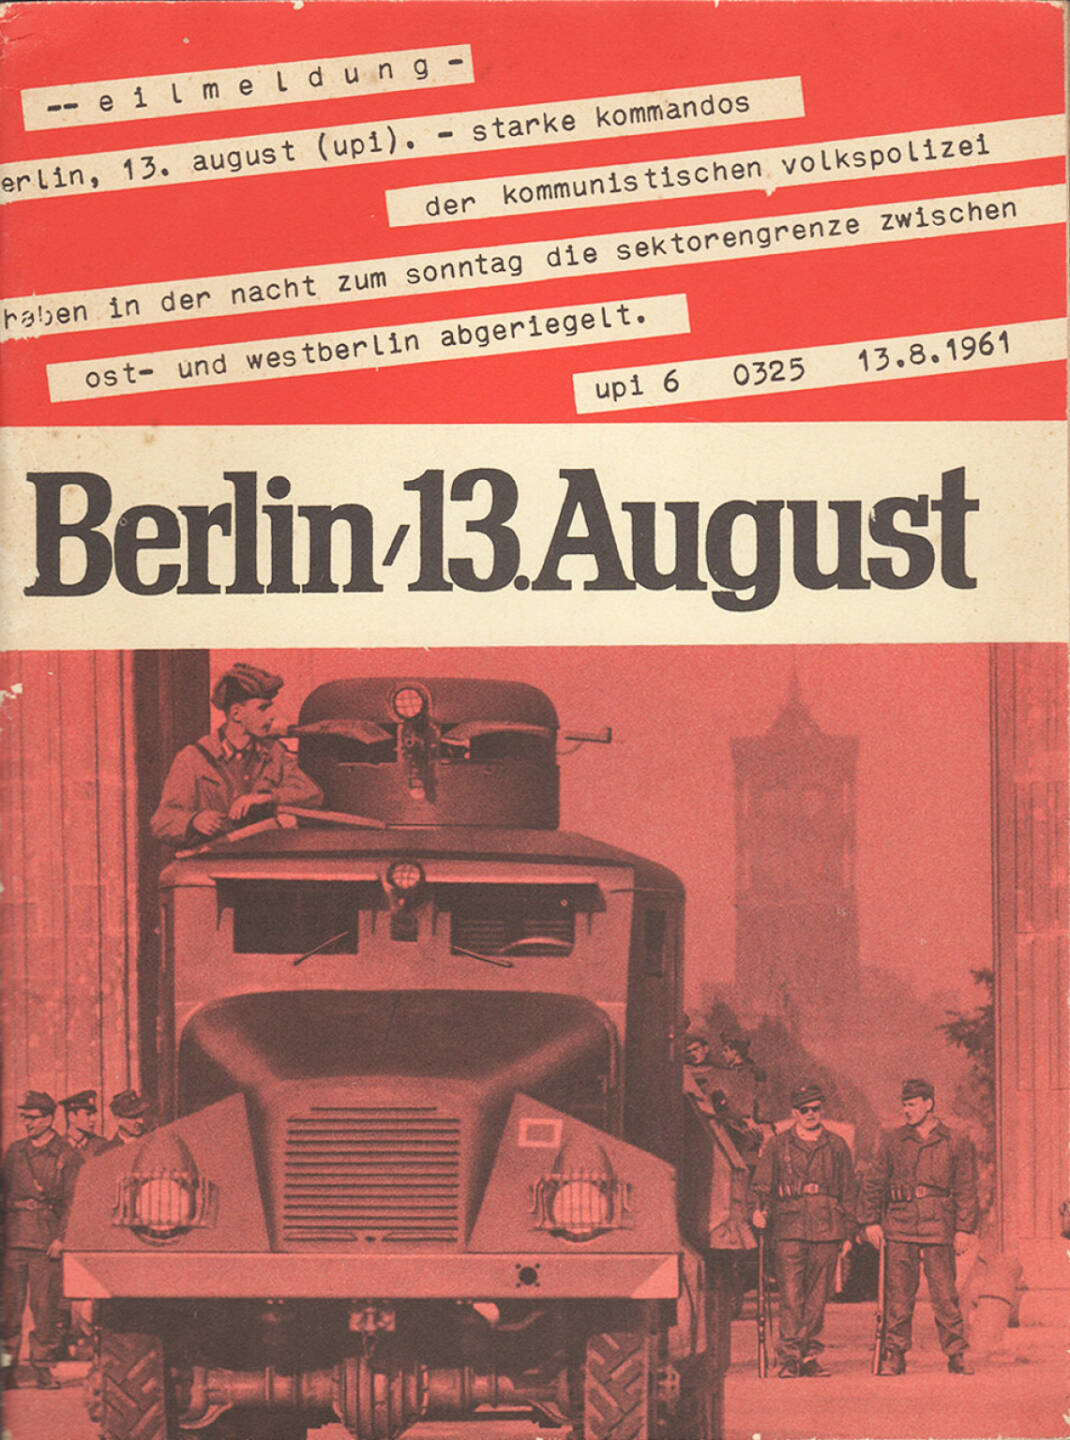 Berlin, 13. August, 1963 - Bundesministerium für gesamtdeutsche Fragen, Cover - http://josefchladek.com/book/berlin_13_august_1963_-_bundesministerium_fur_gesamtdeutsche_fragen